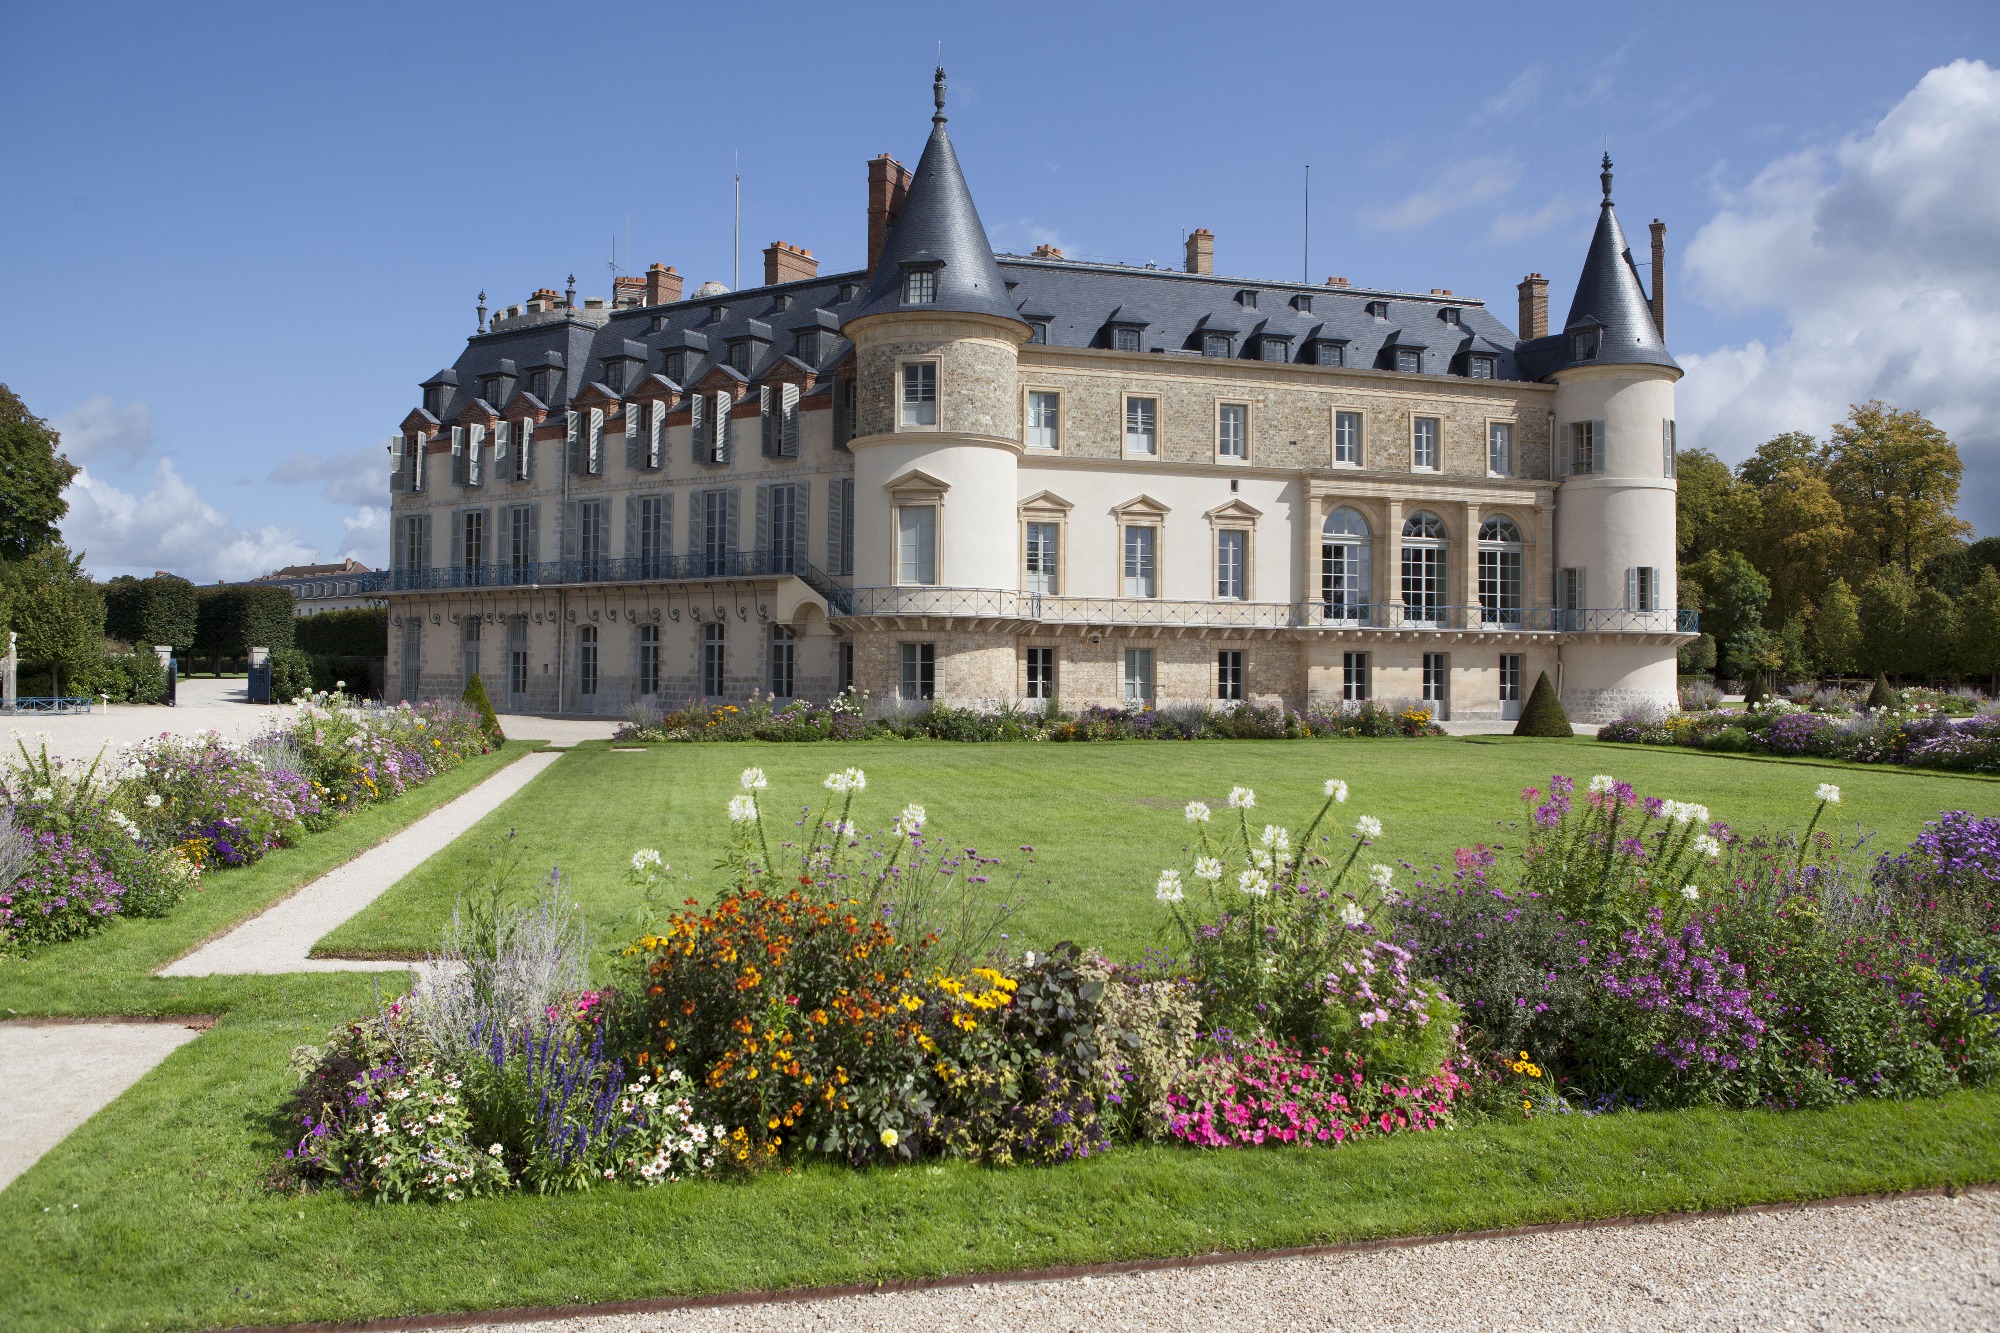 Château de Rambouillet facade on the garden and facade on the grand canal